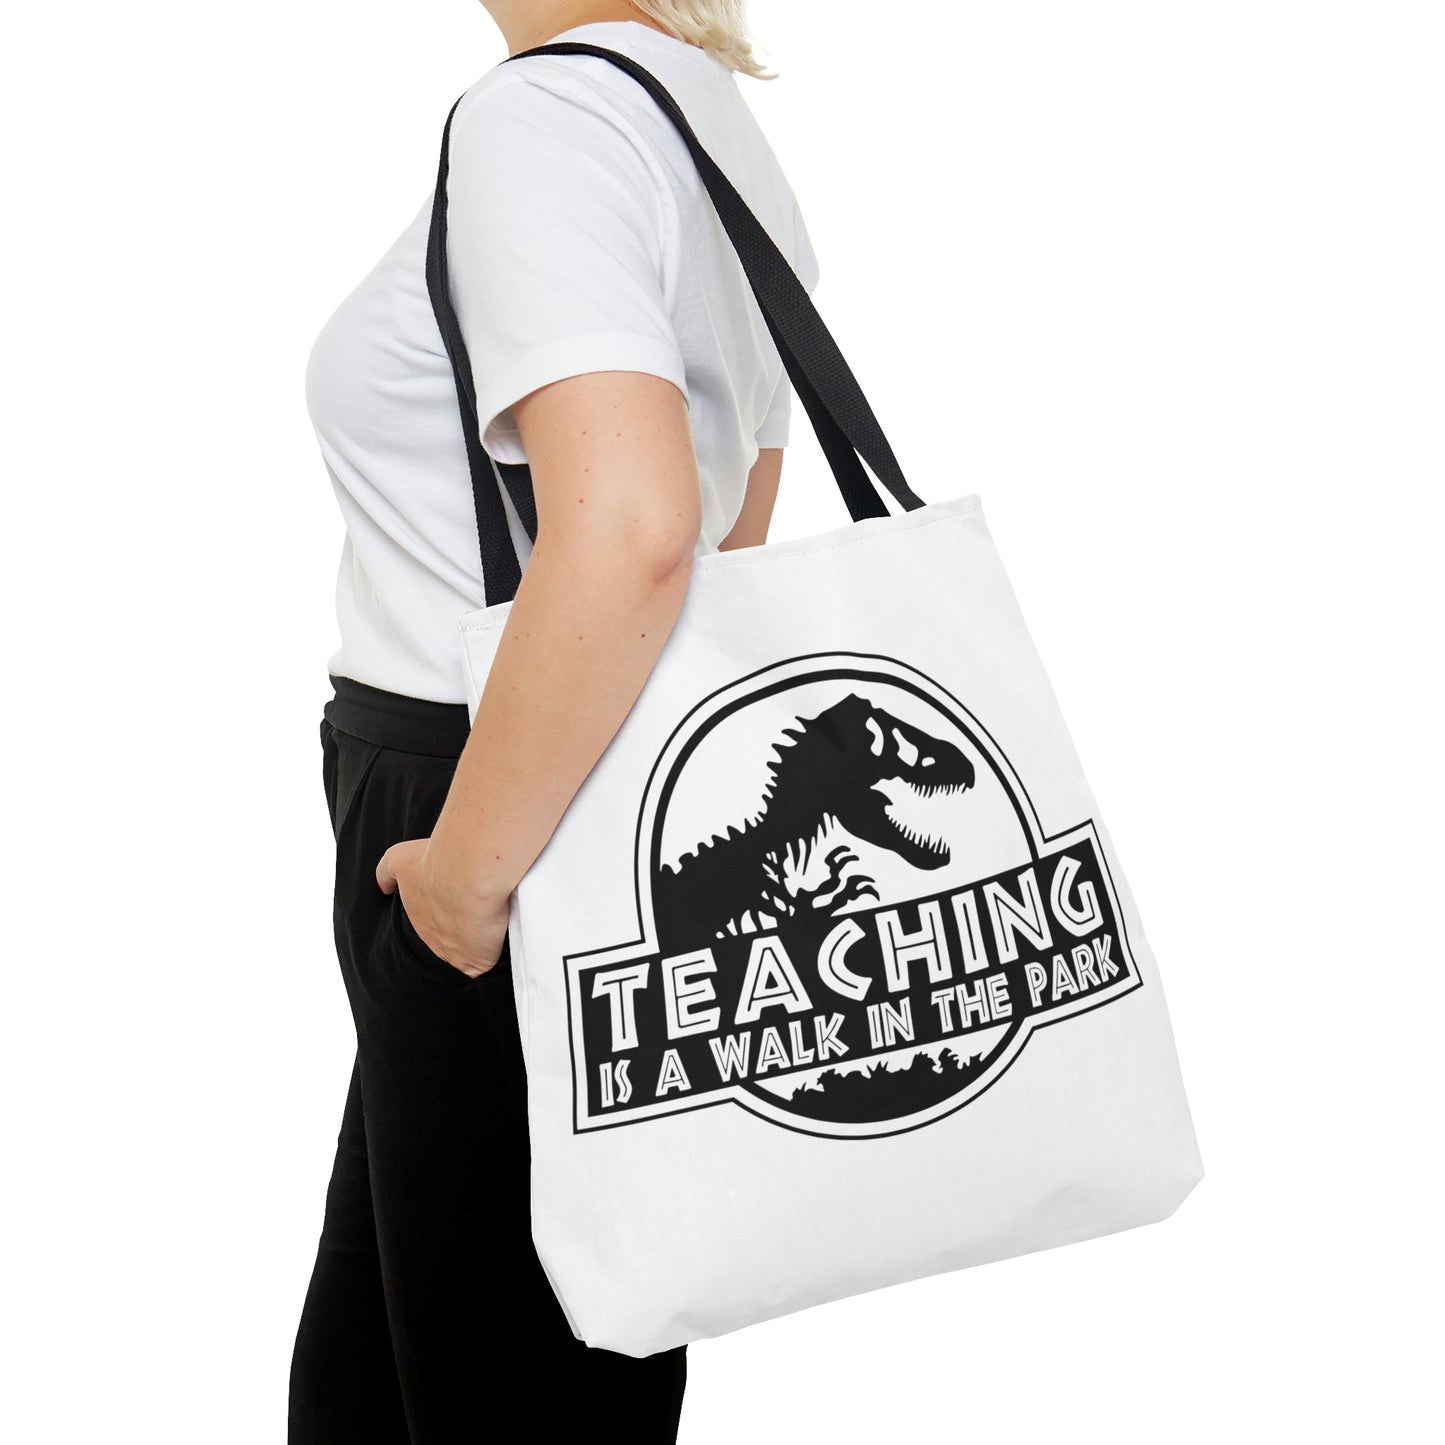 "Teaching is like walking in a park" Tote Bag